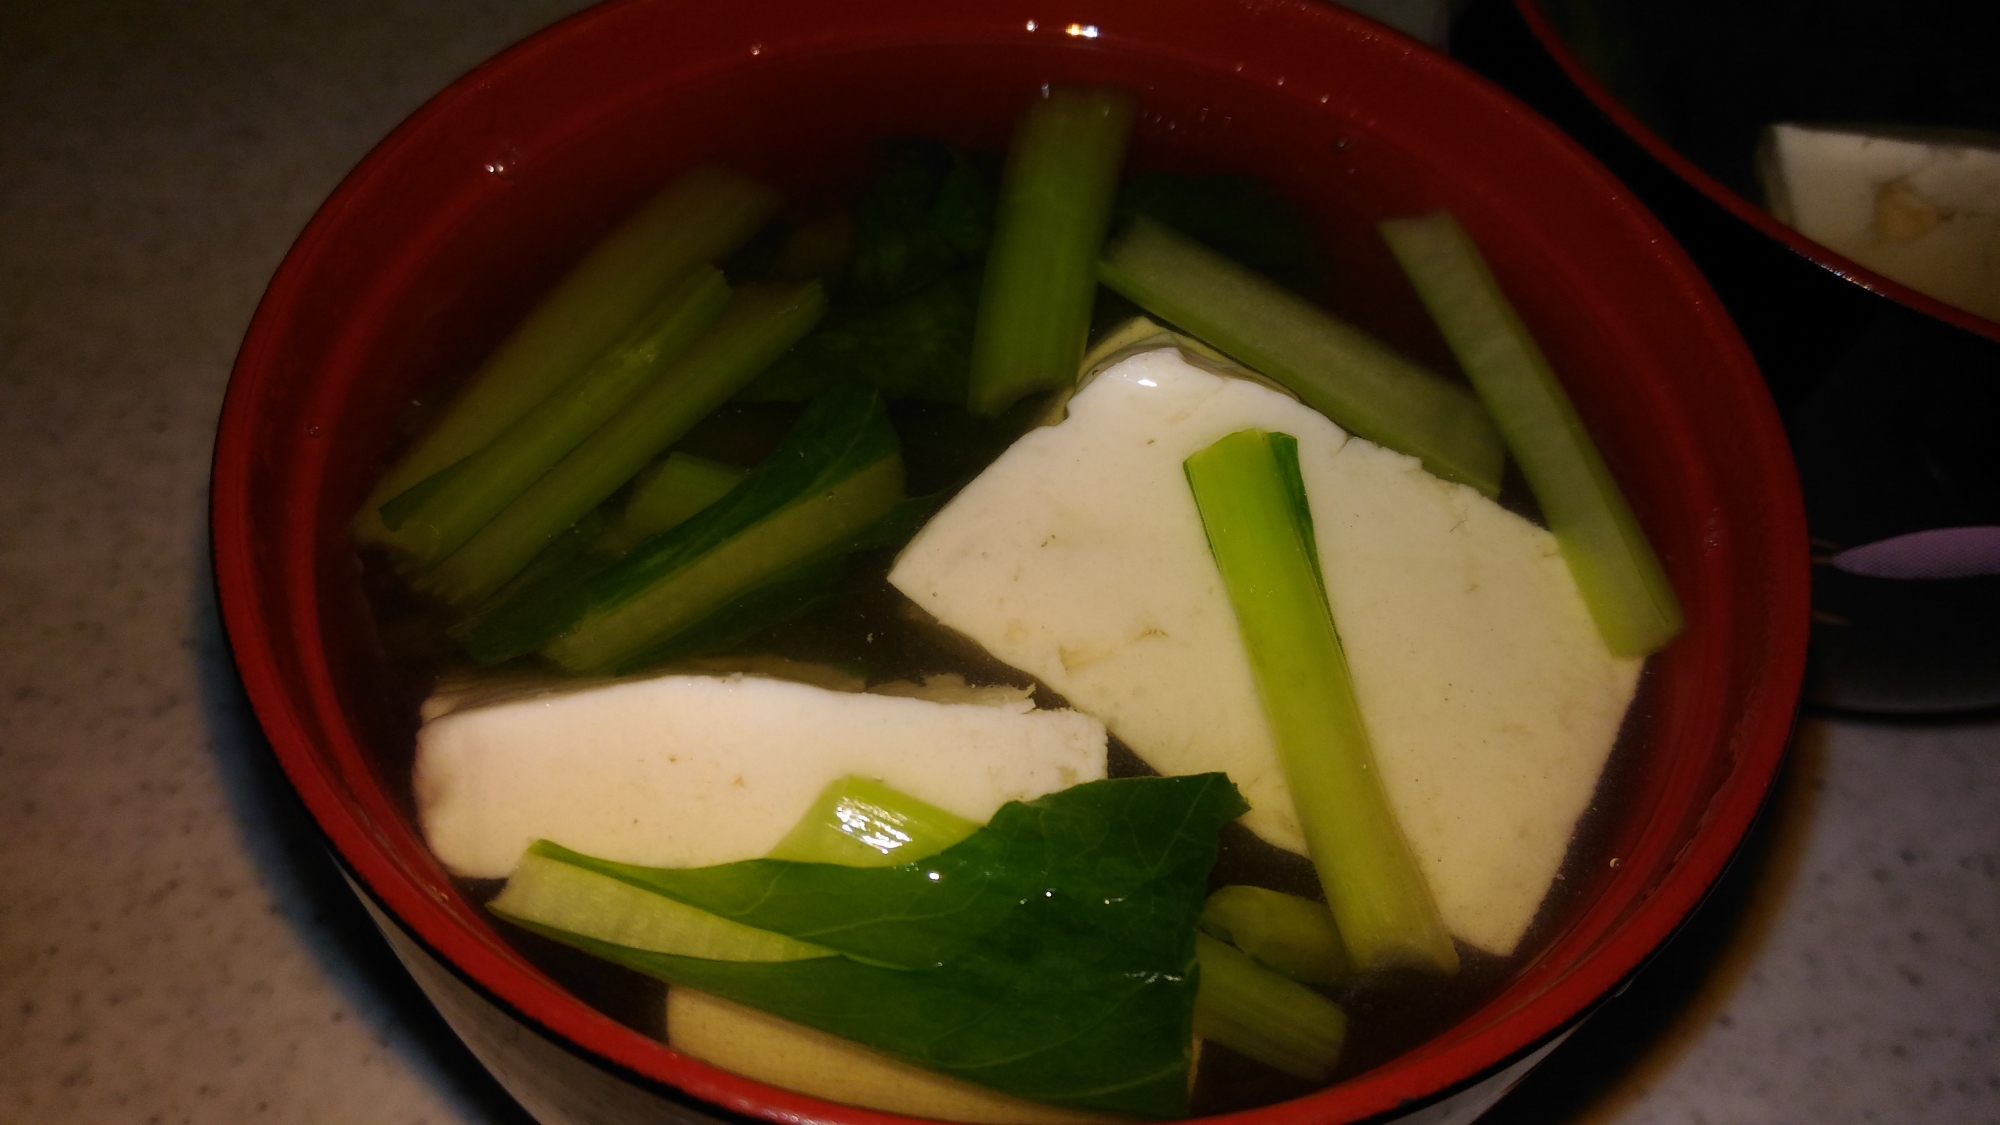 豆腐と小松菜の澄まし汁